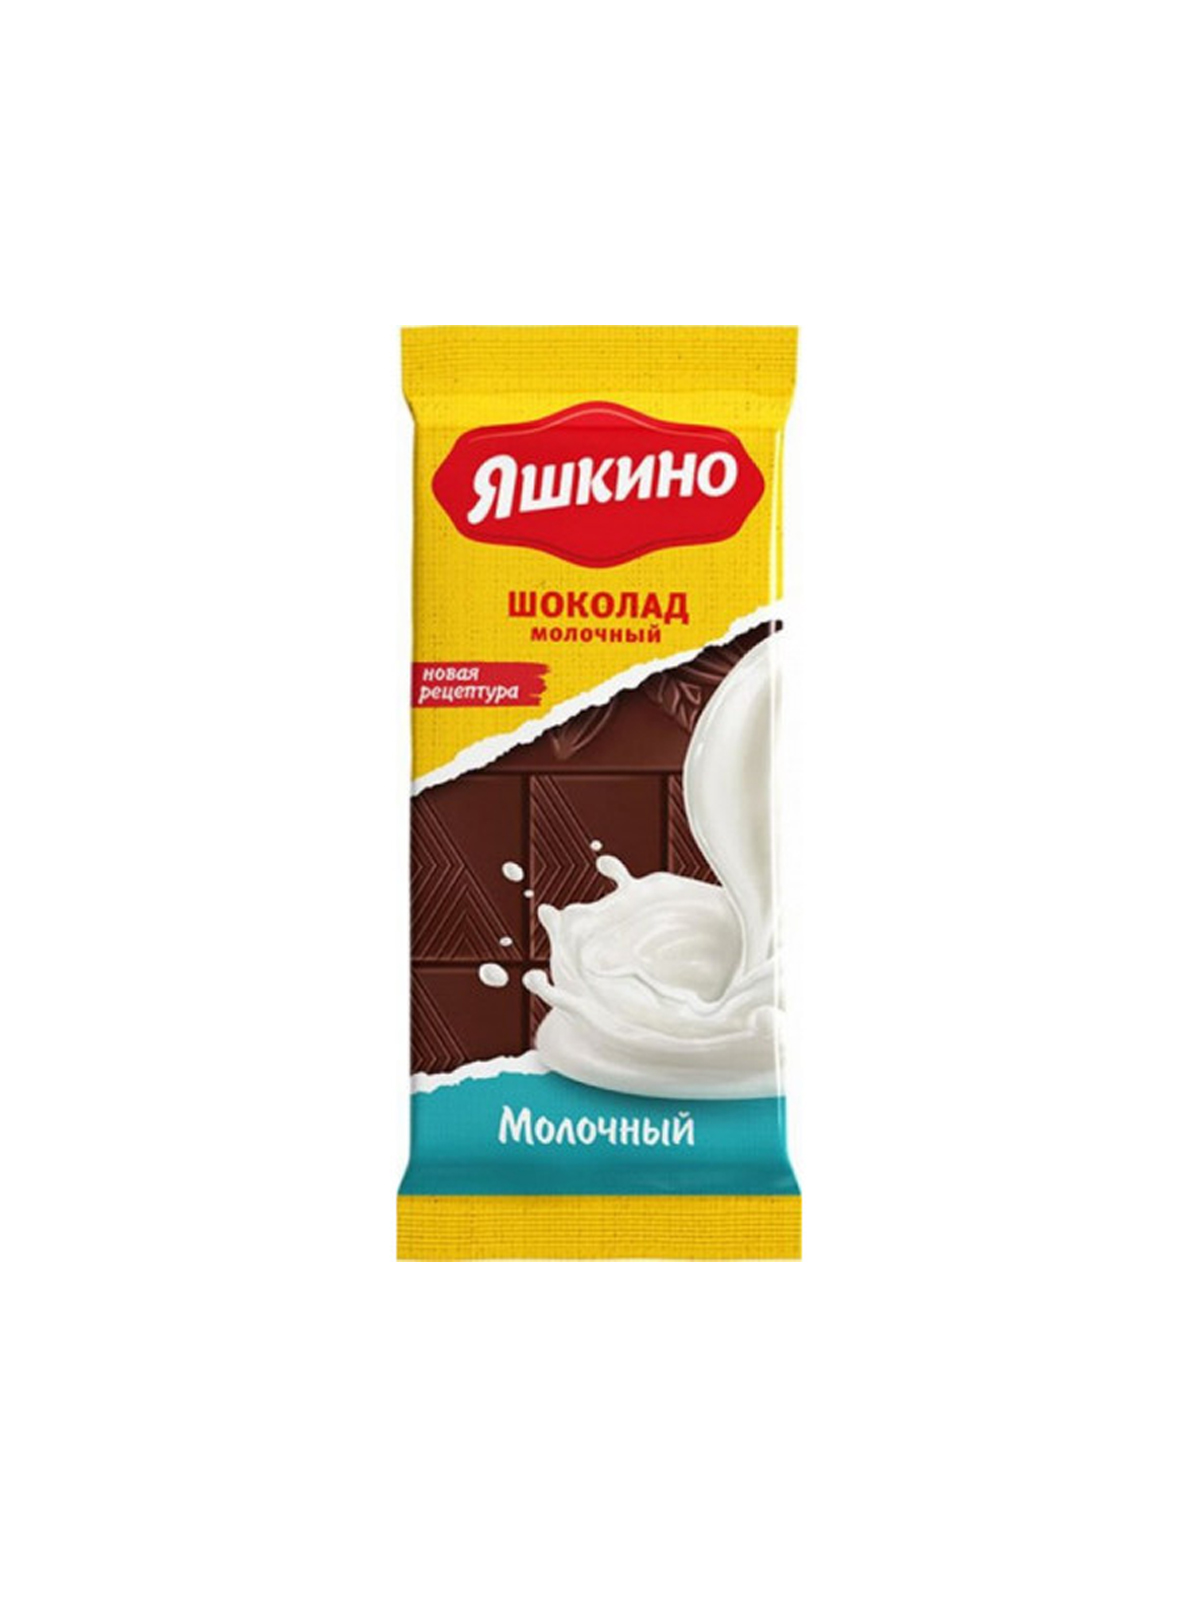 Молочный шоколад Яшкино 90г